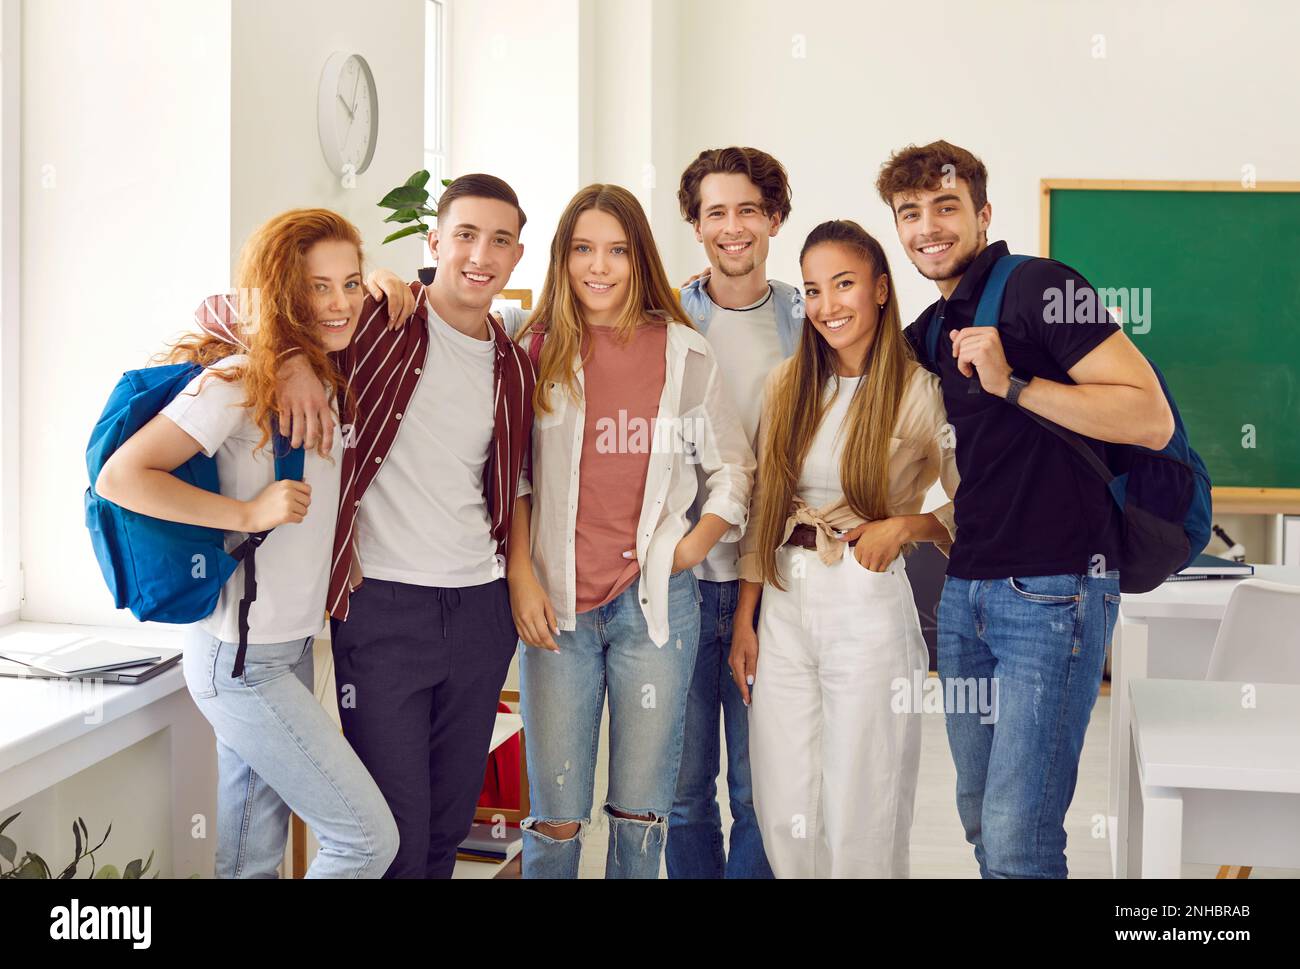 Gruppenportrait Og Schüler in Klassenkameraden mit Taschen lächeln, umarmen und in die Kamera schauen. Stockfoto